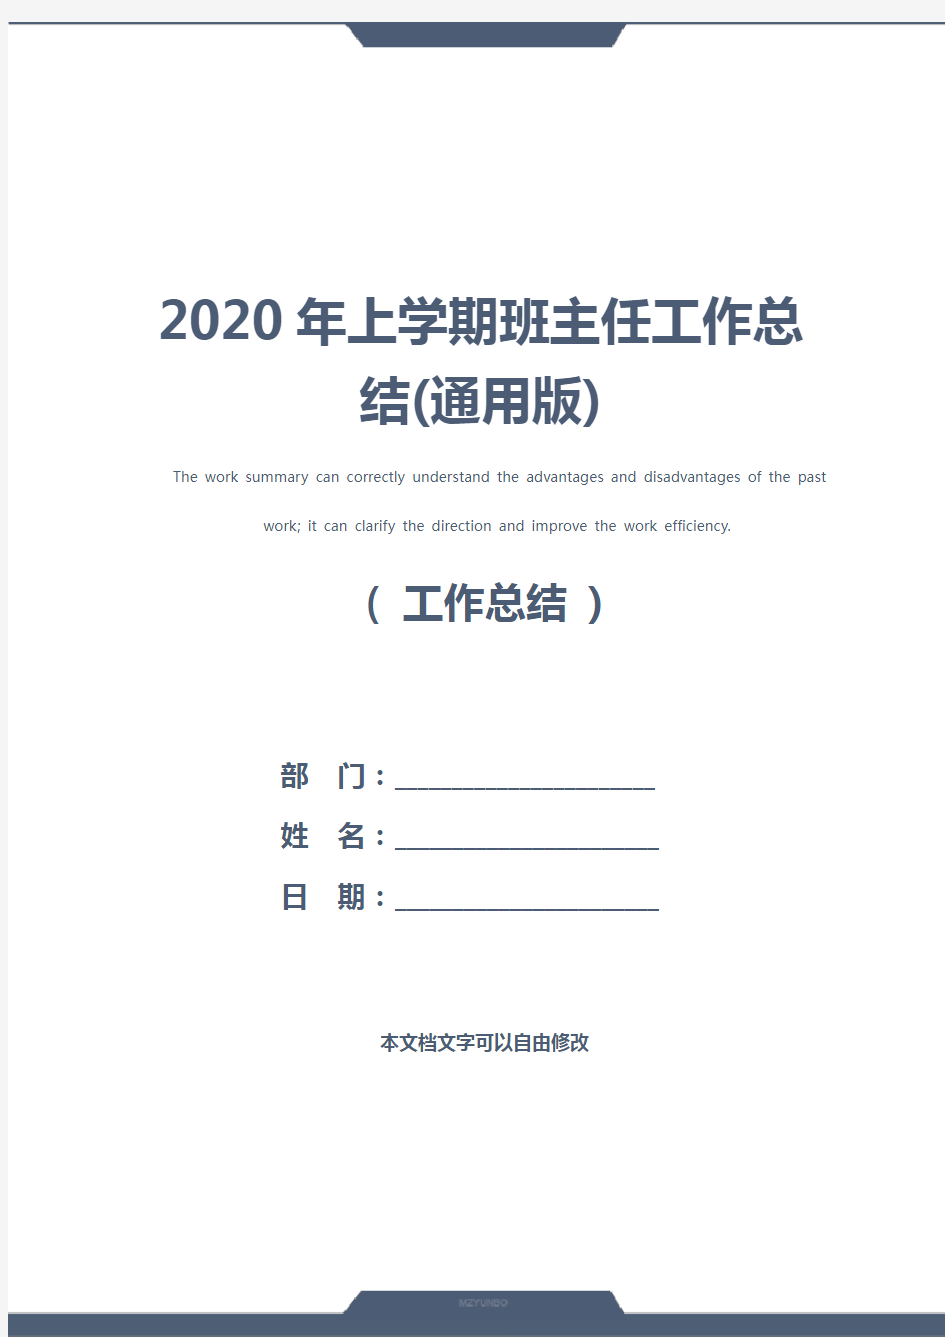 2020年上学期班主任工作总结(通用版)